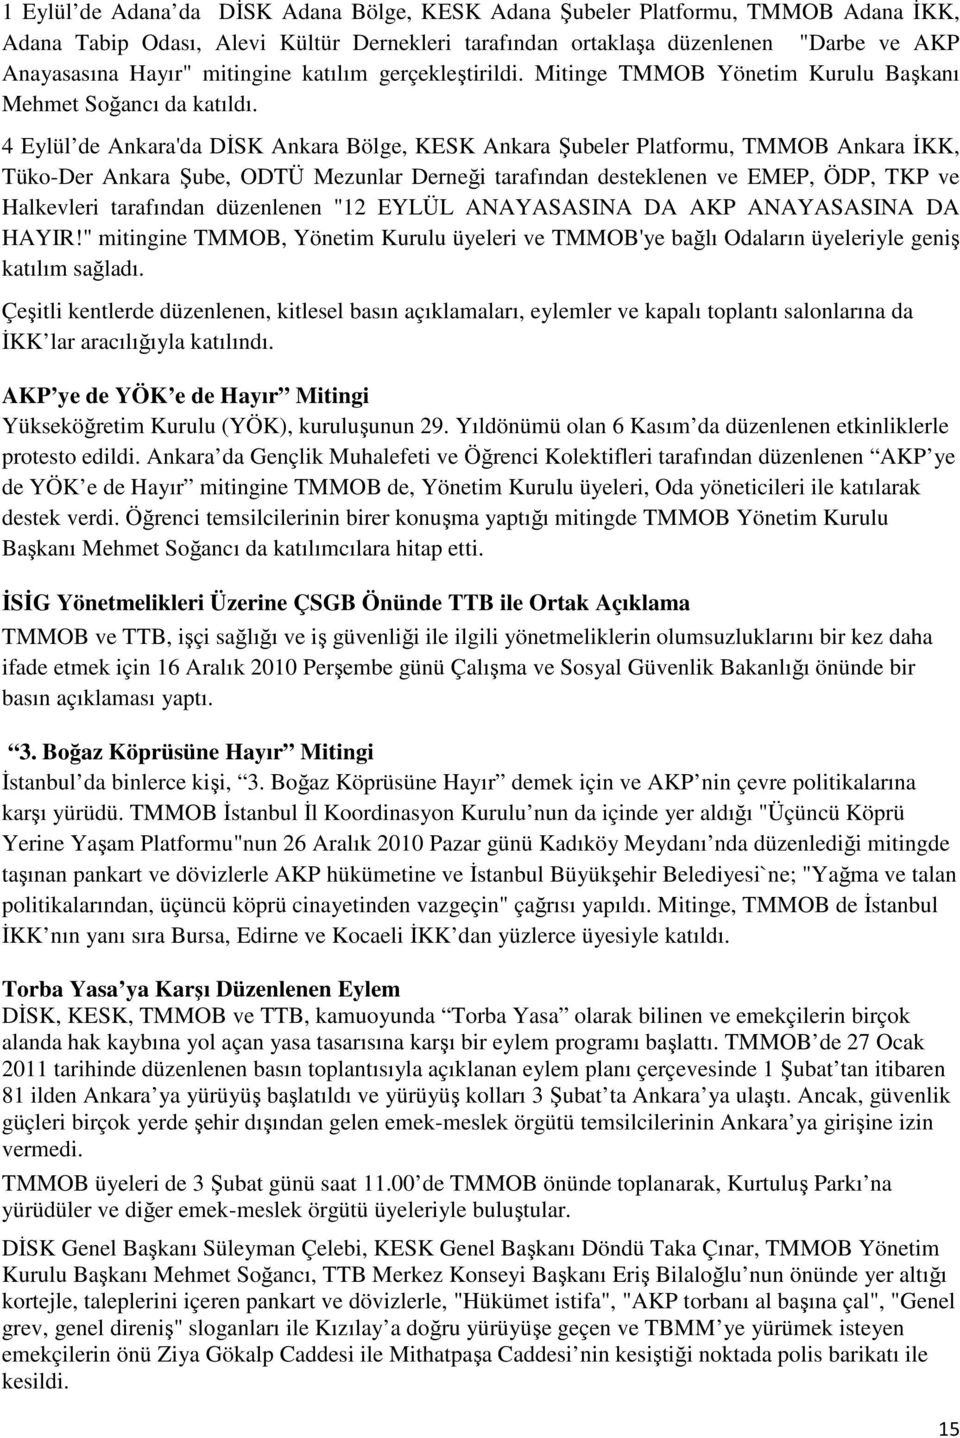 4 Eylül de Ankara'da DİSK Ankara Bölge, KESK Ankara Şubeler Platformu, TMMOB Ankara İKK, Tüko-Der Ankara Şube, ODTÜ Mezunlar Derneği tarafından desteklenen ve EMEP, ÖDP, TKP ve Halkevleri tarafından